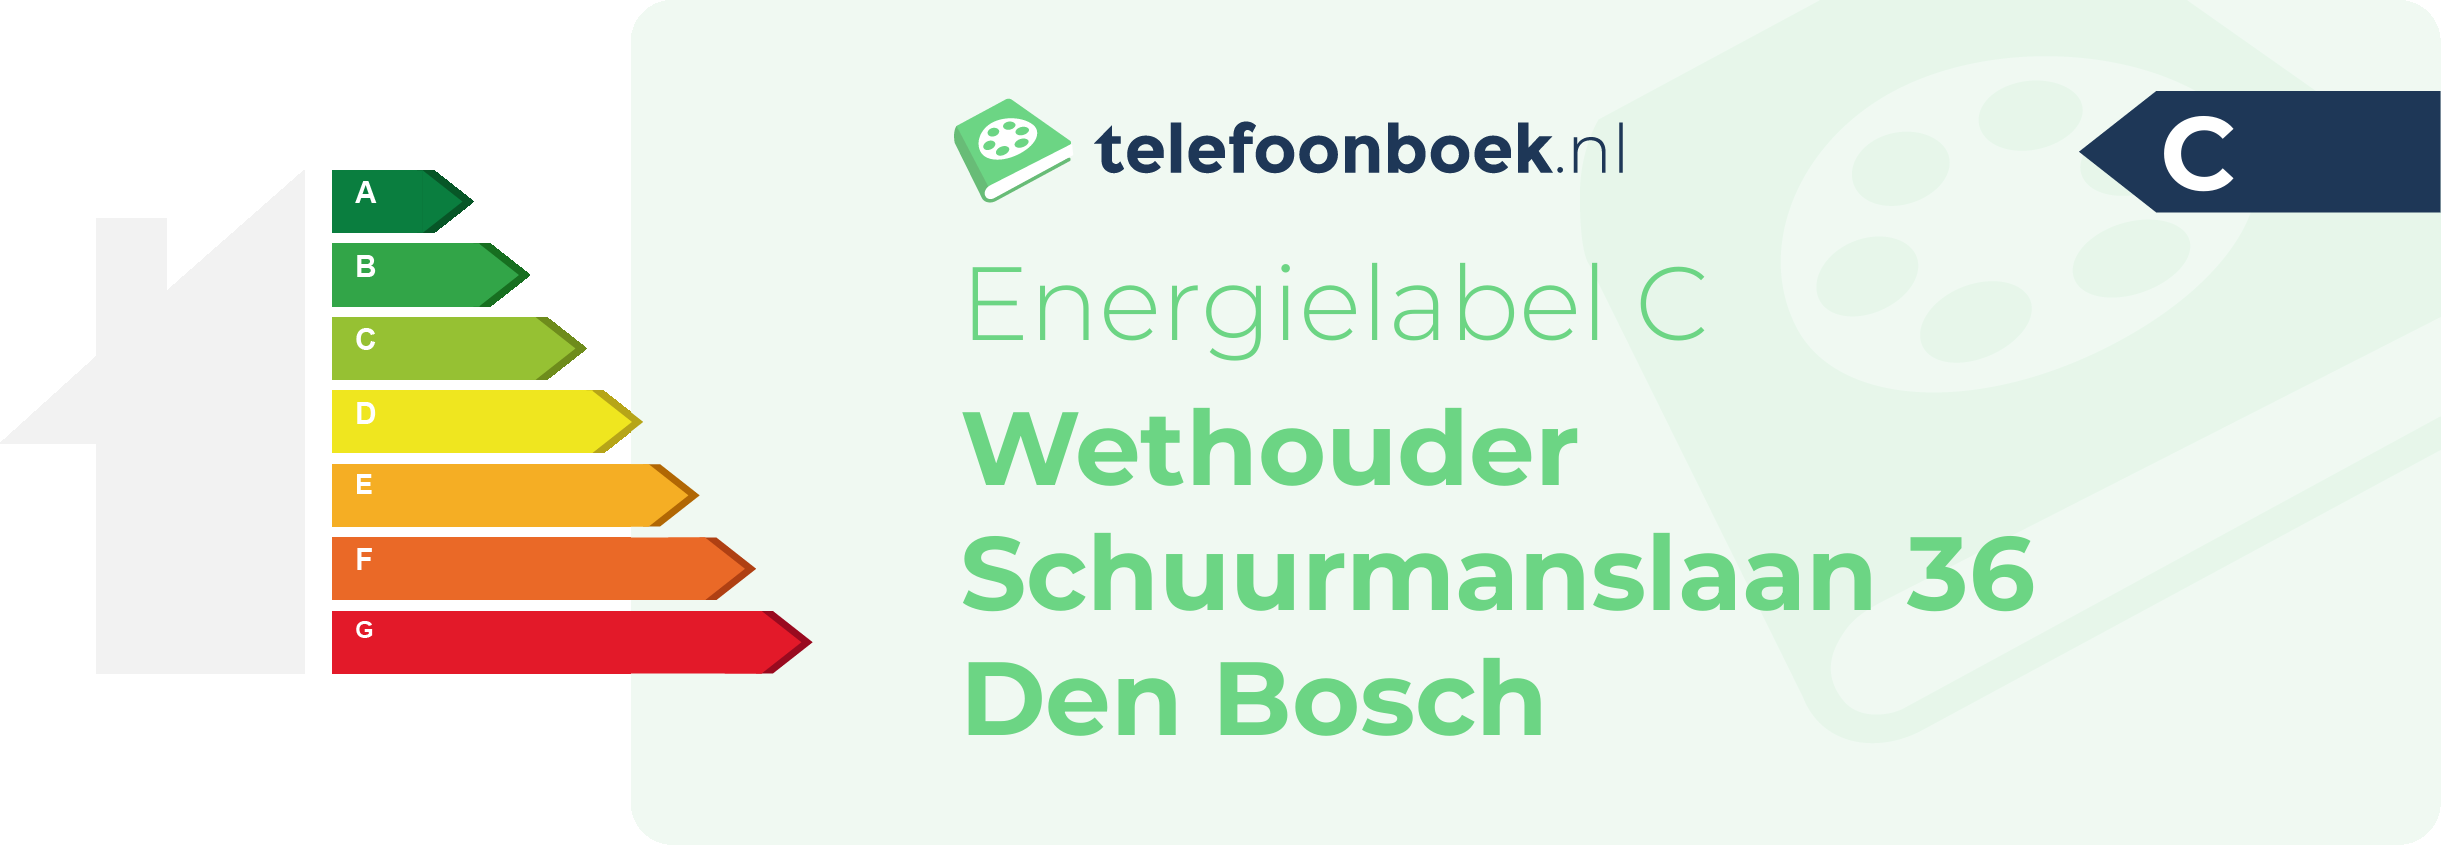 Energielabel Wethouder Schuurmanslaan 36 Den Bosch